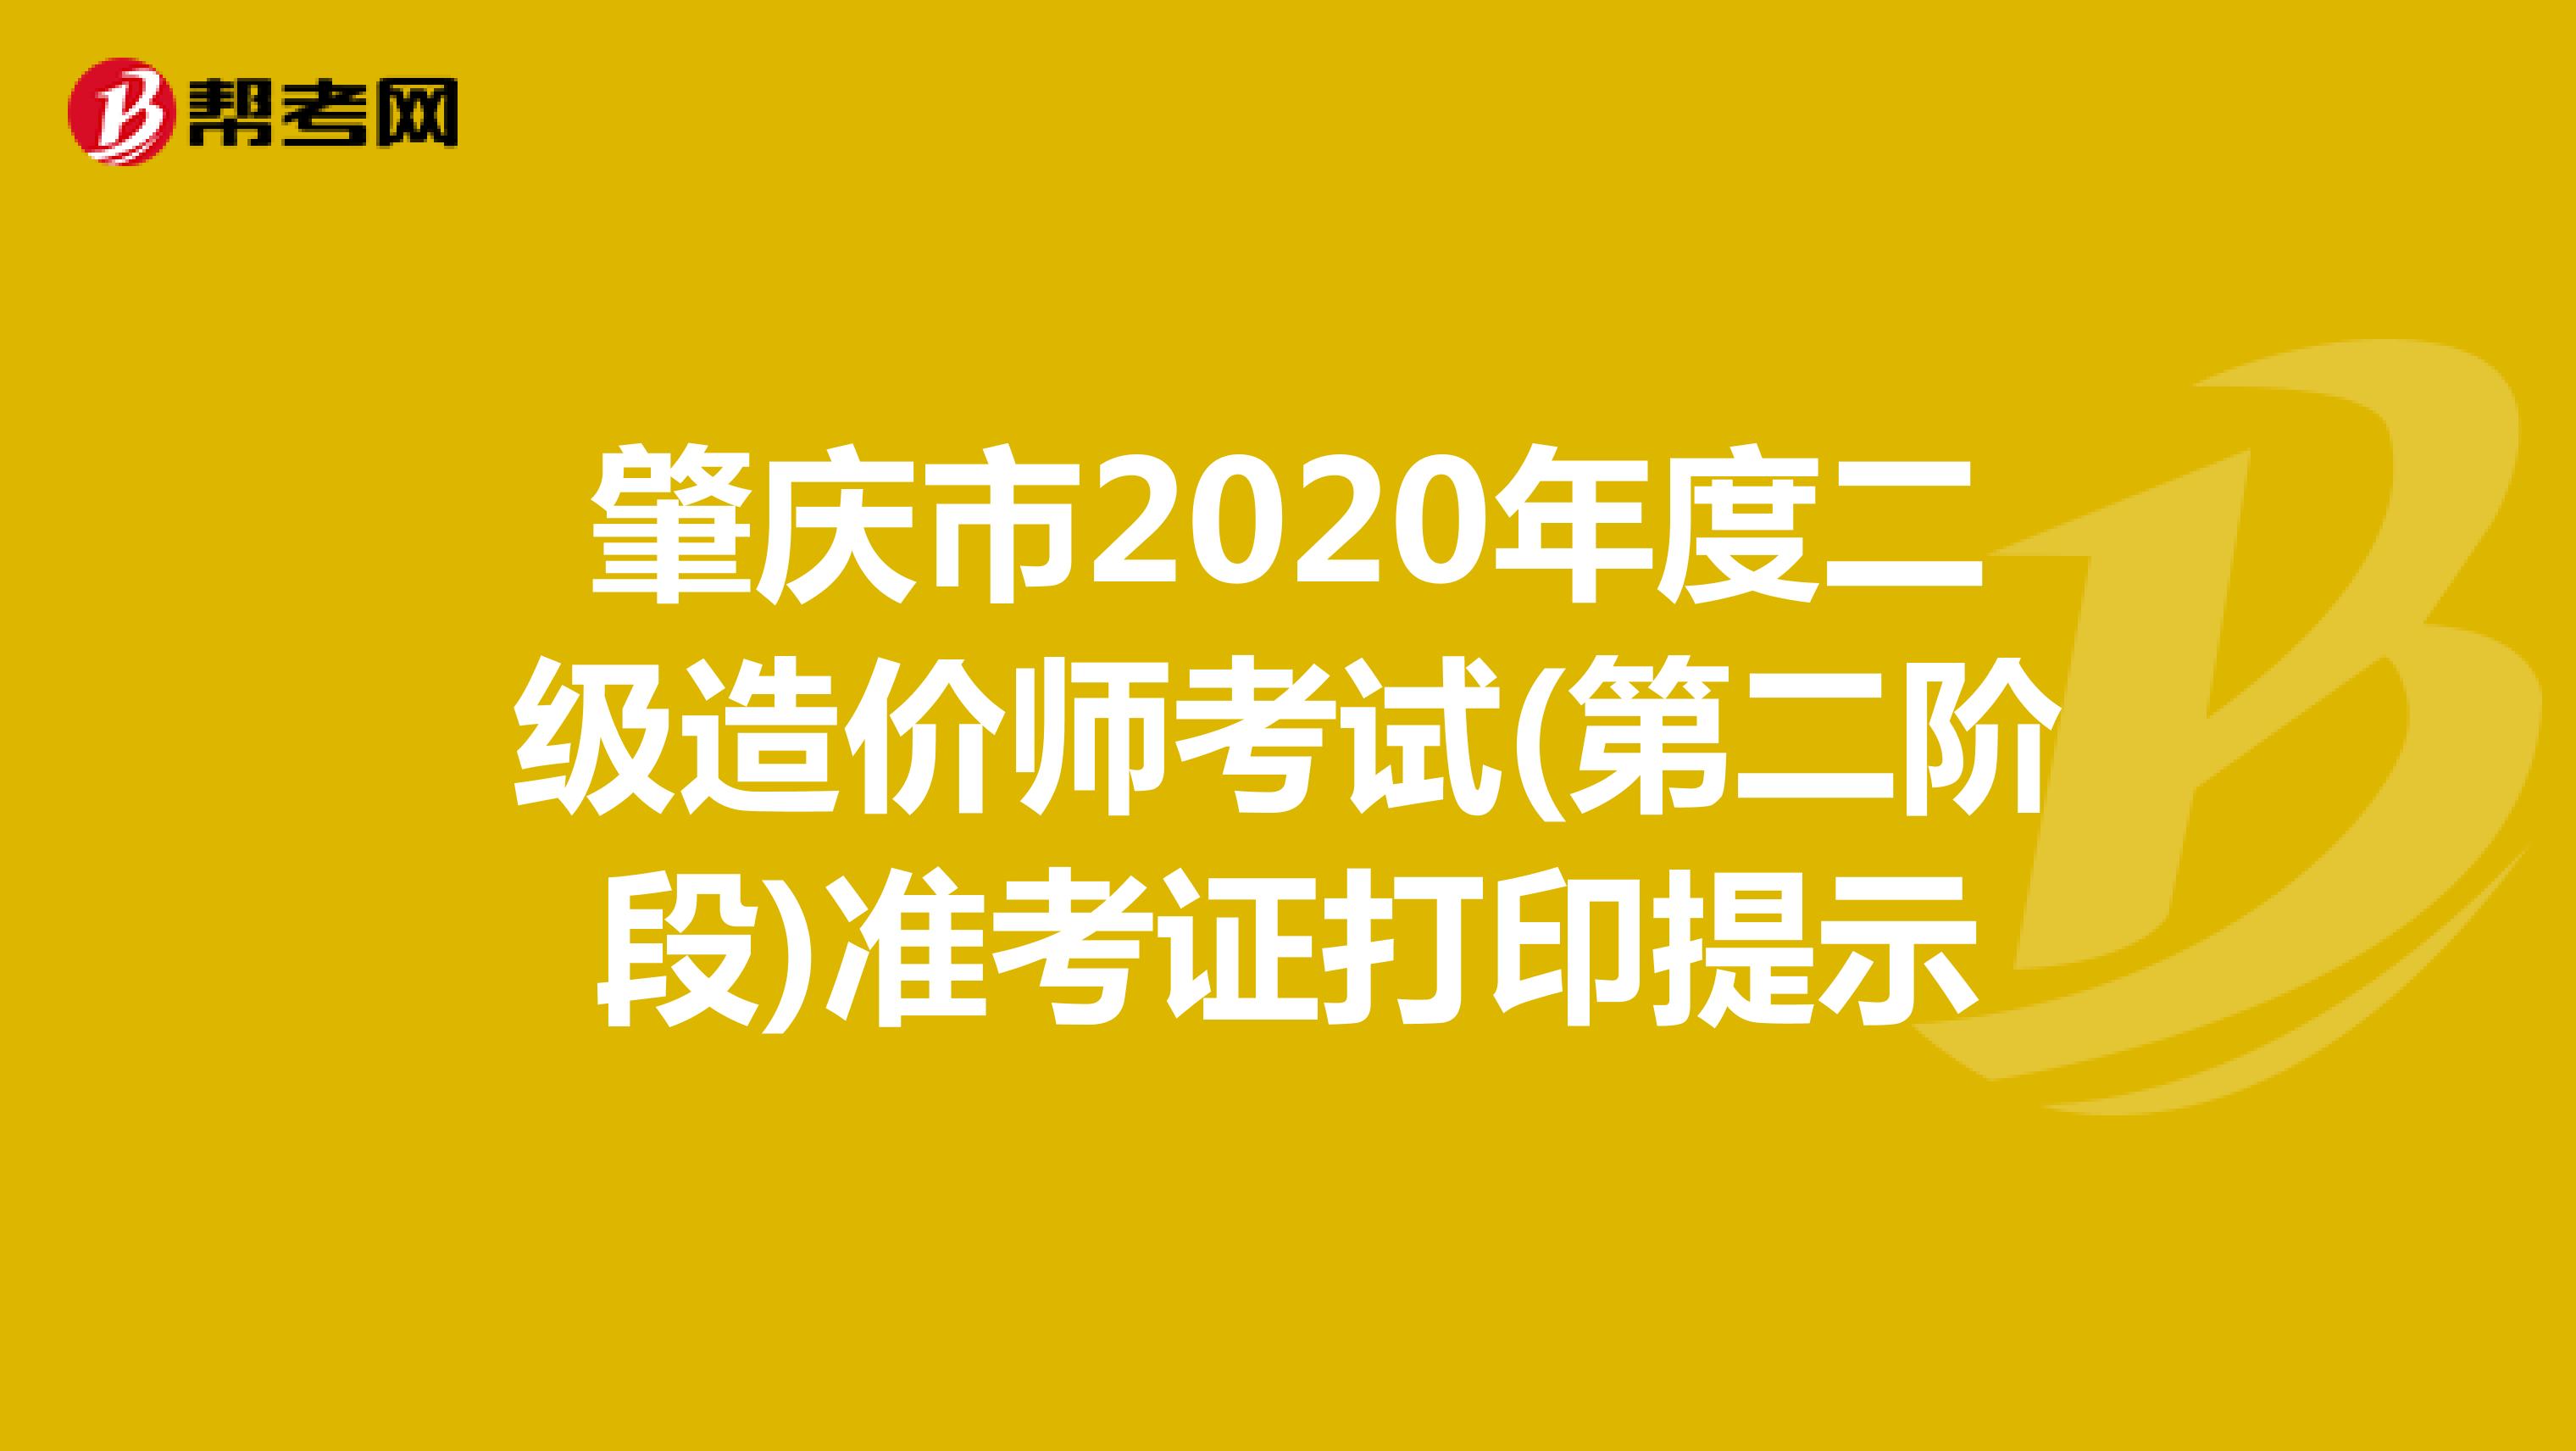 肇庆市2020年度二级造价师考试(第二阶段)准考证打印提示